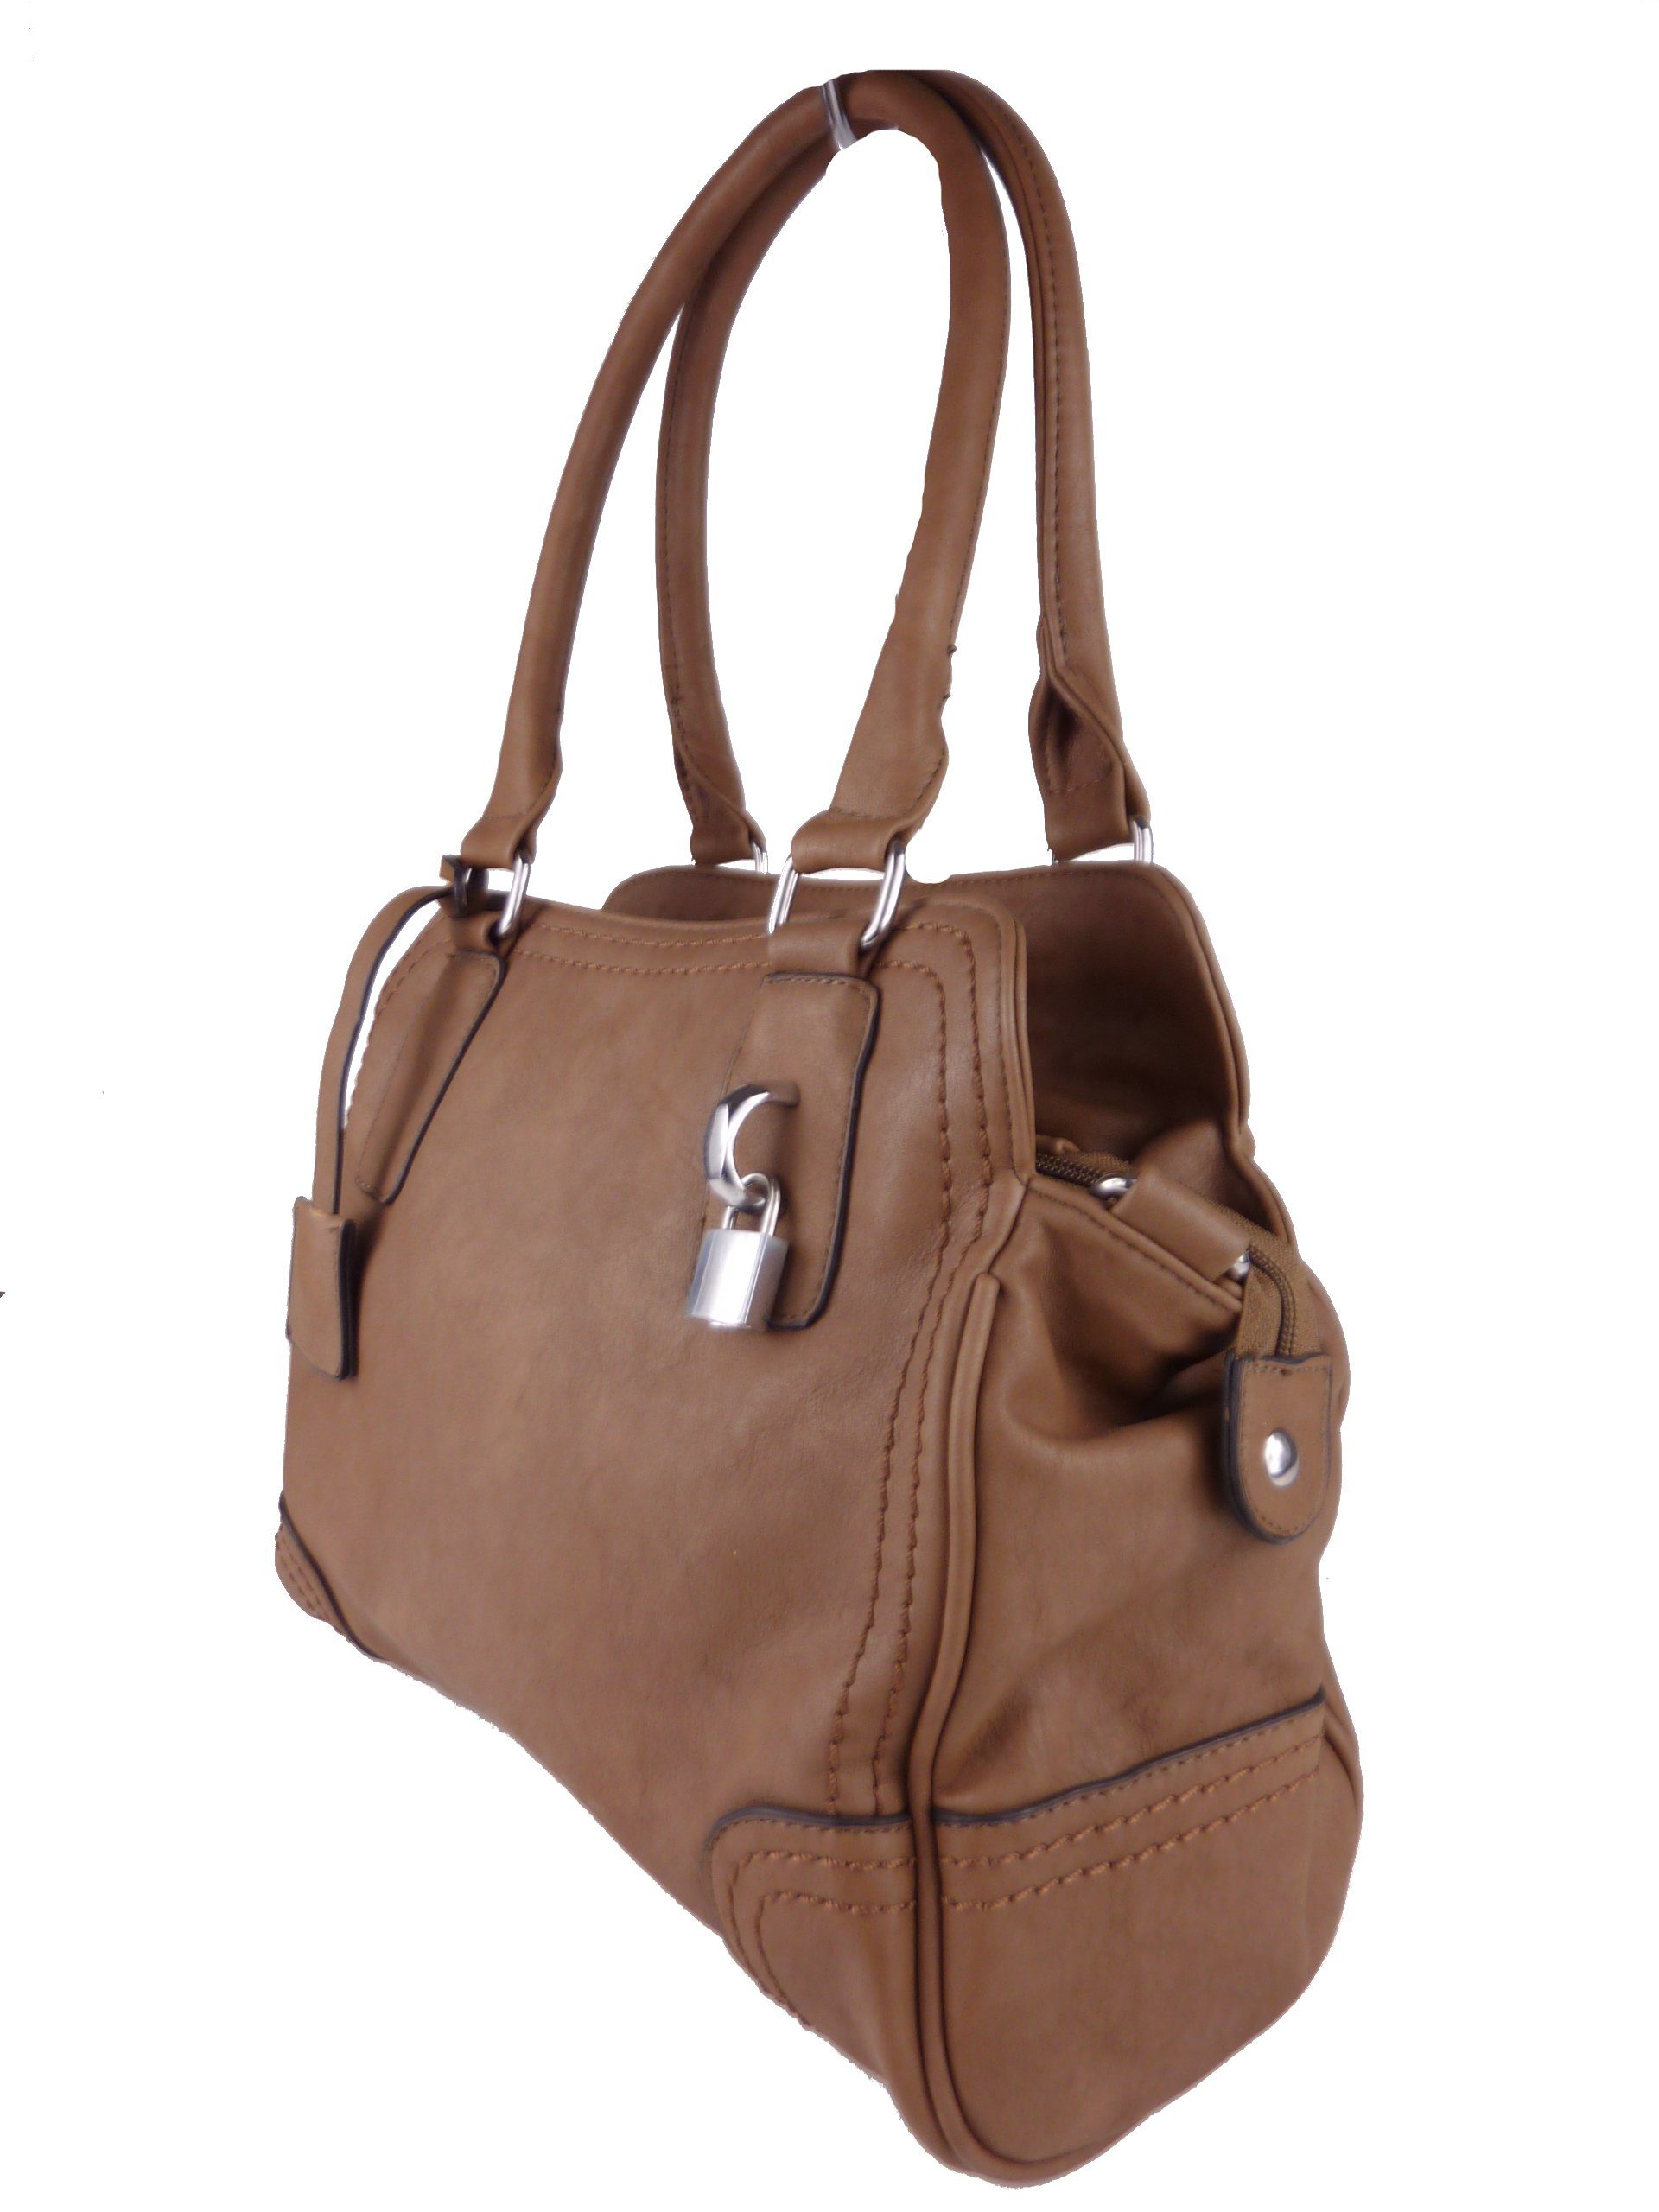 Schultertasche, klassische tote elegante satchel Taschen4life Handtasche khaki Handtasche C1125, bag, hobo